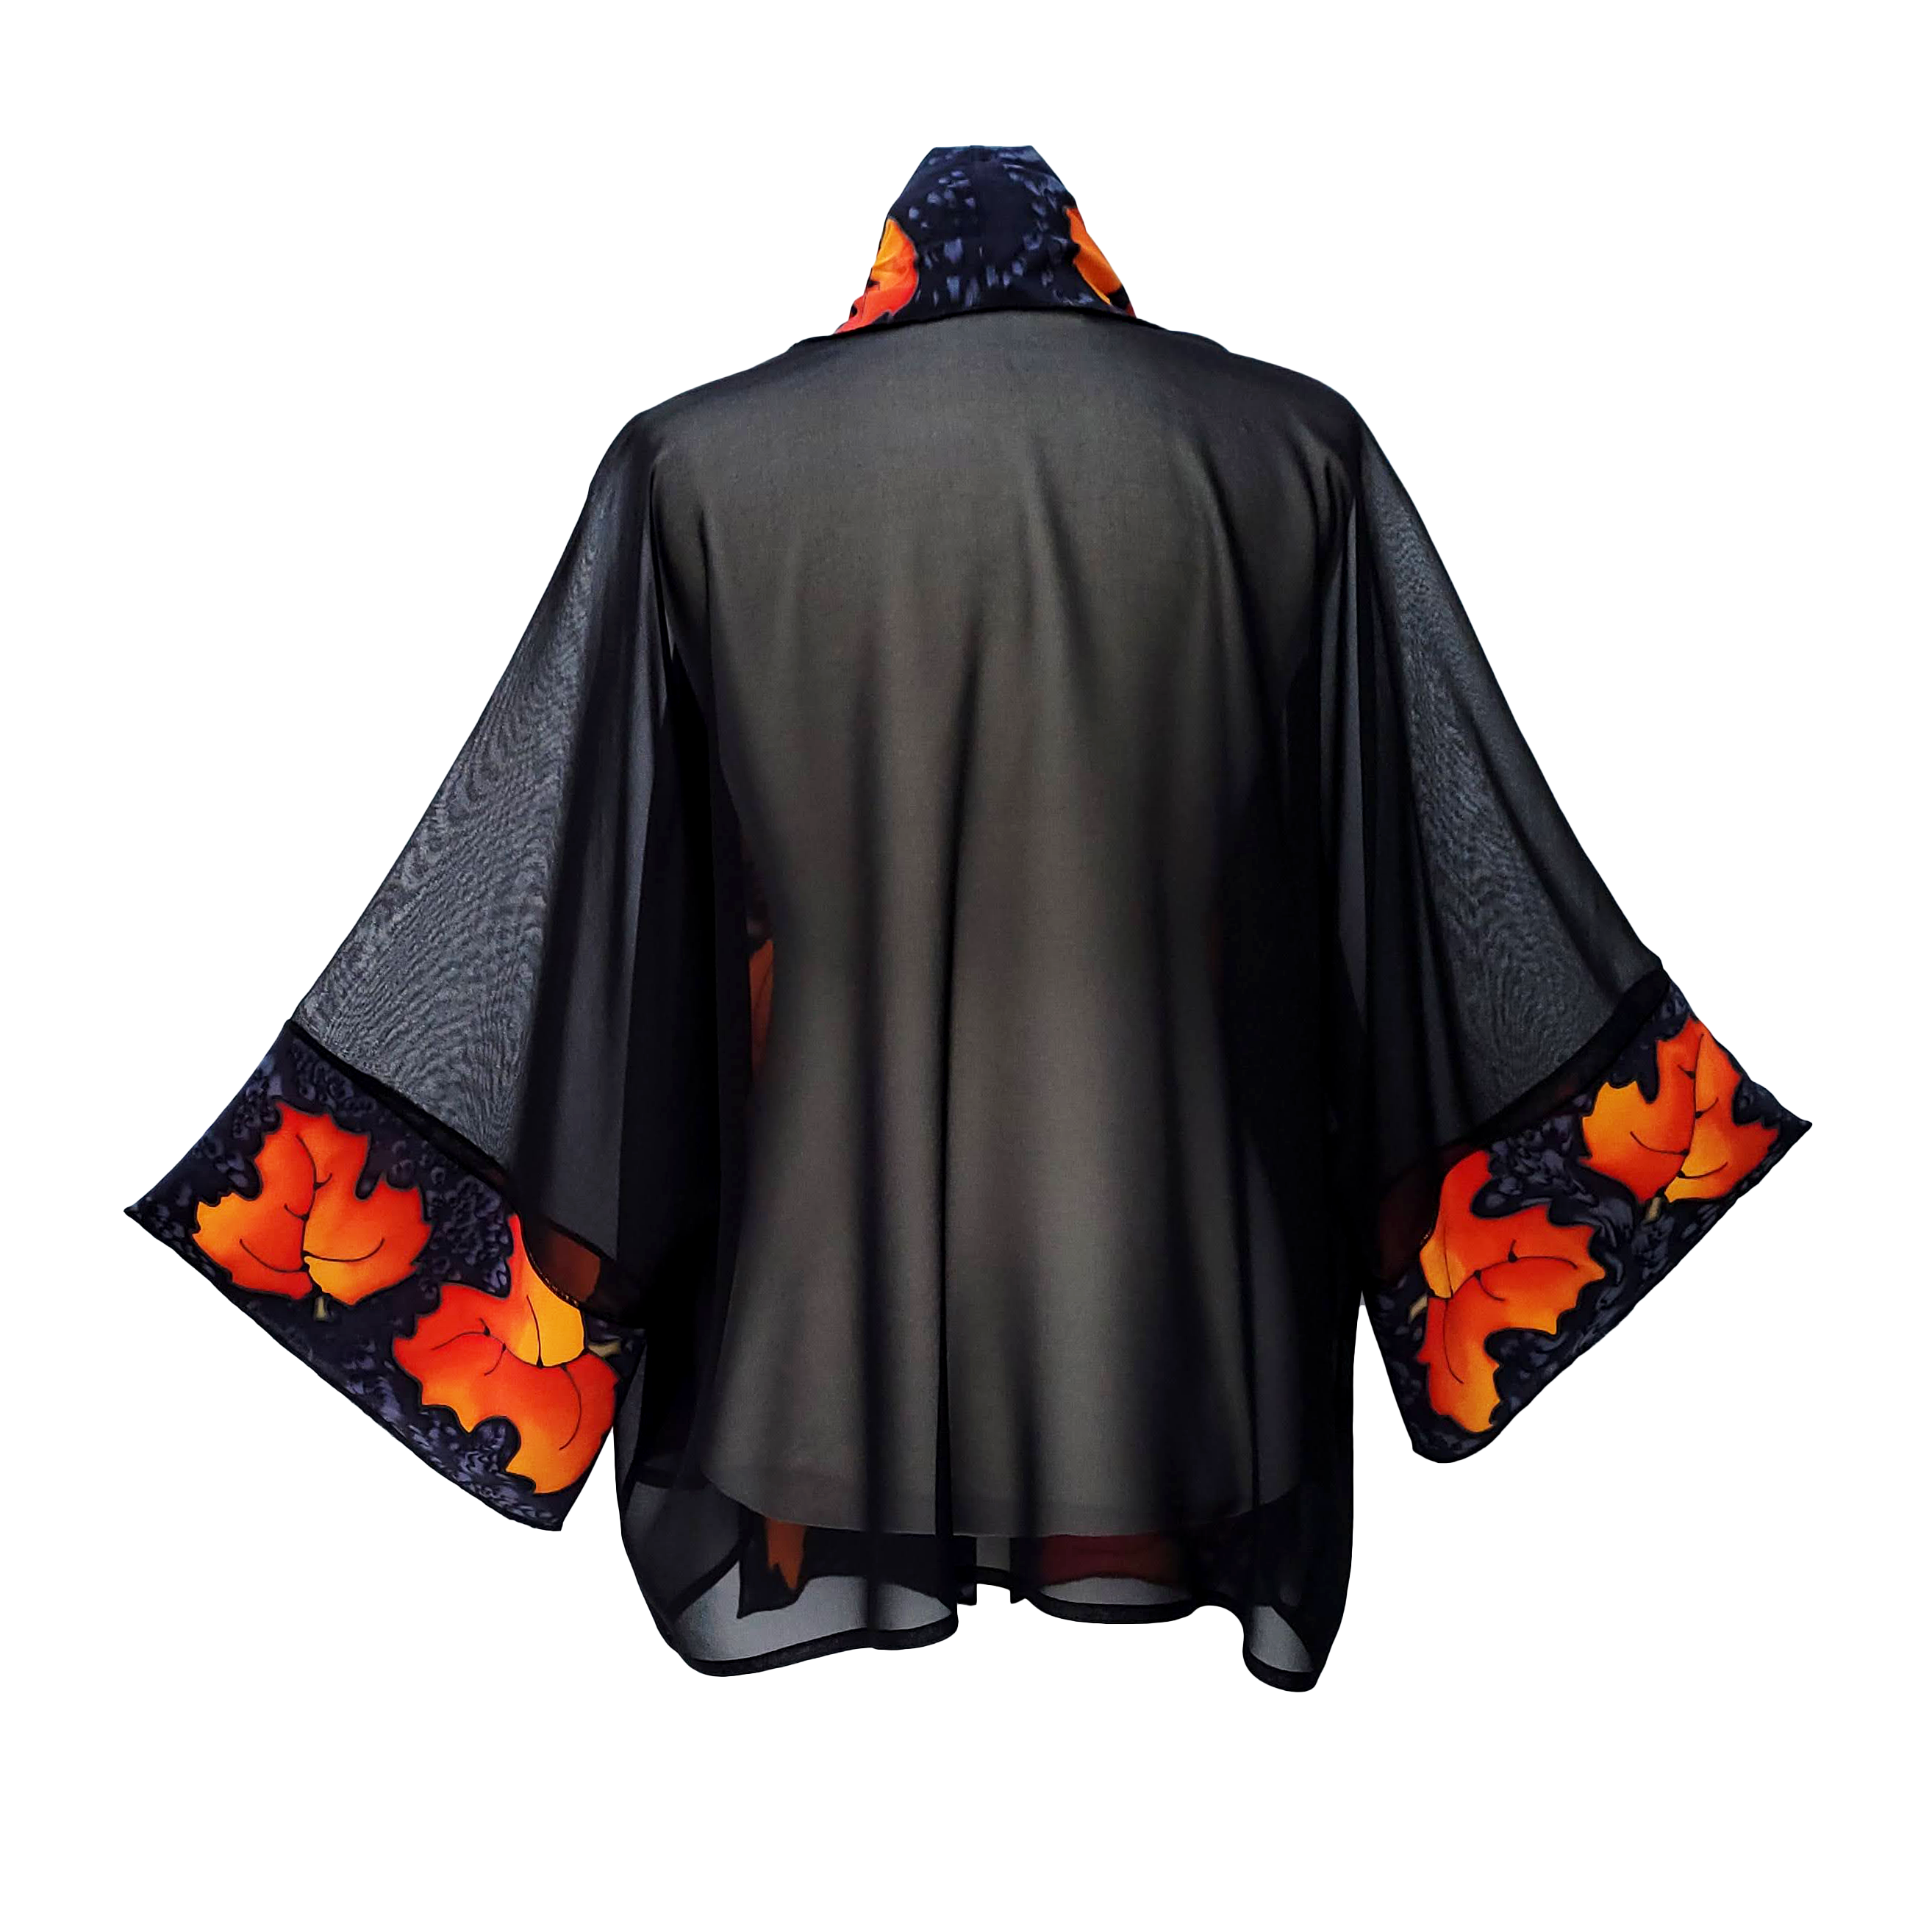 back sheer silk kimono one size ladies clothing handmade by Lynne Kiel